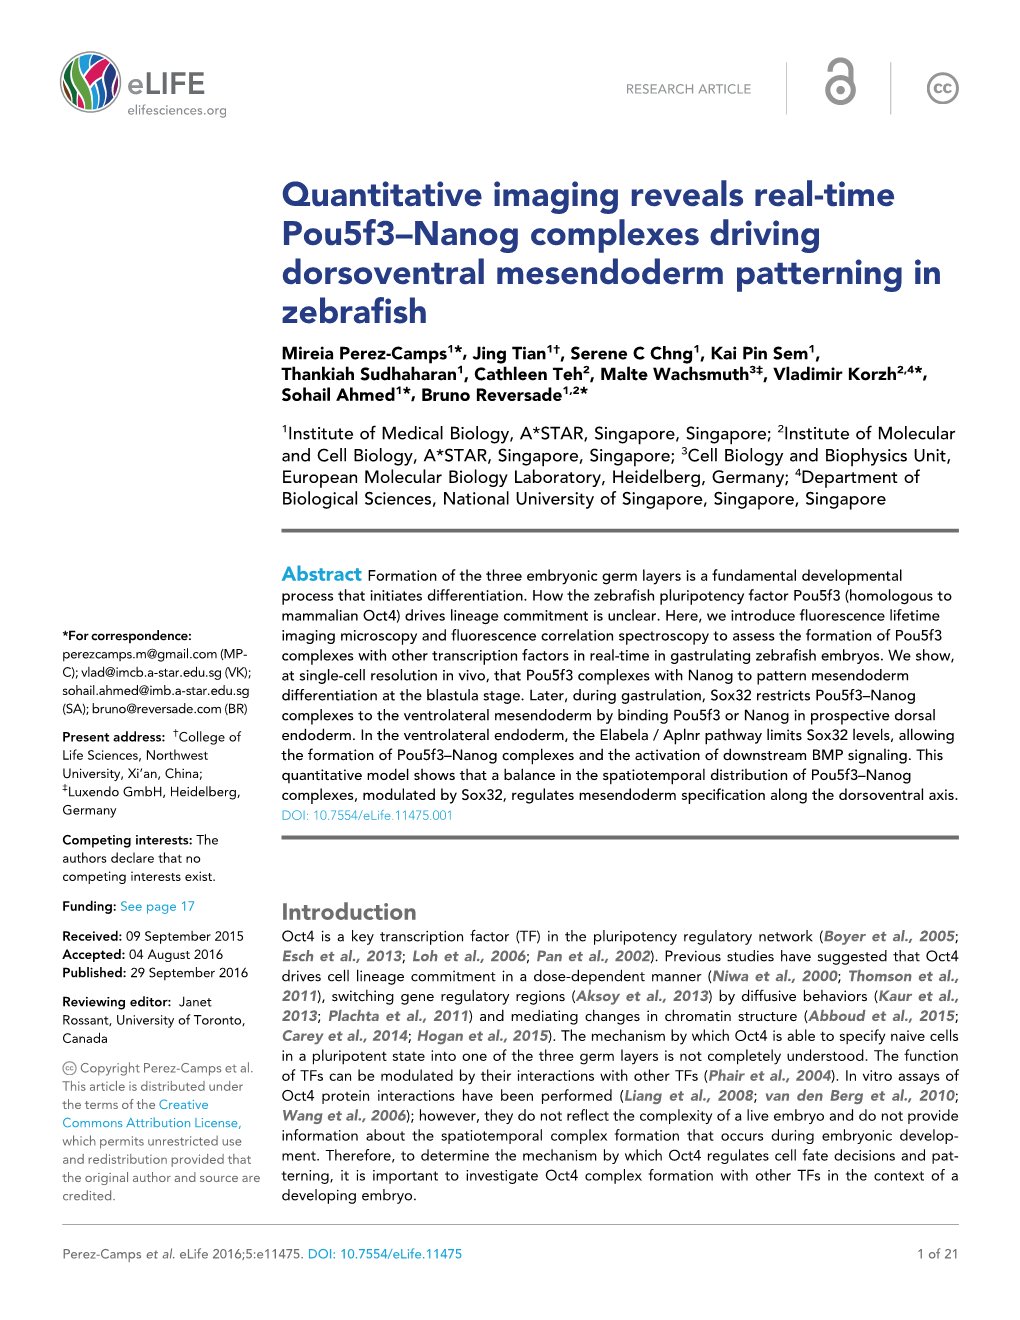 Quantitative Imaging Reveals Real-Time Pou5f3–Nanog Complexes Driving